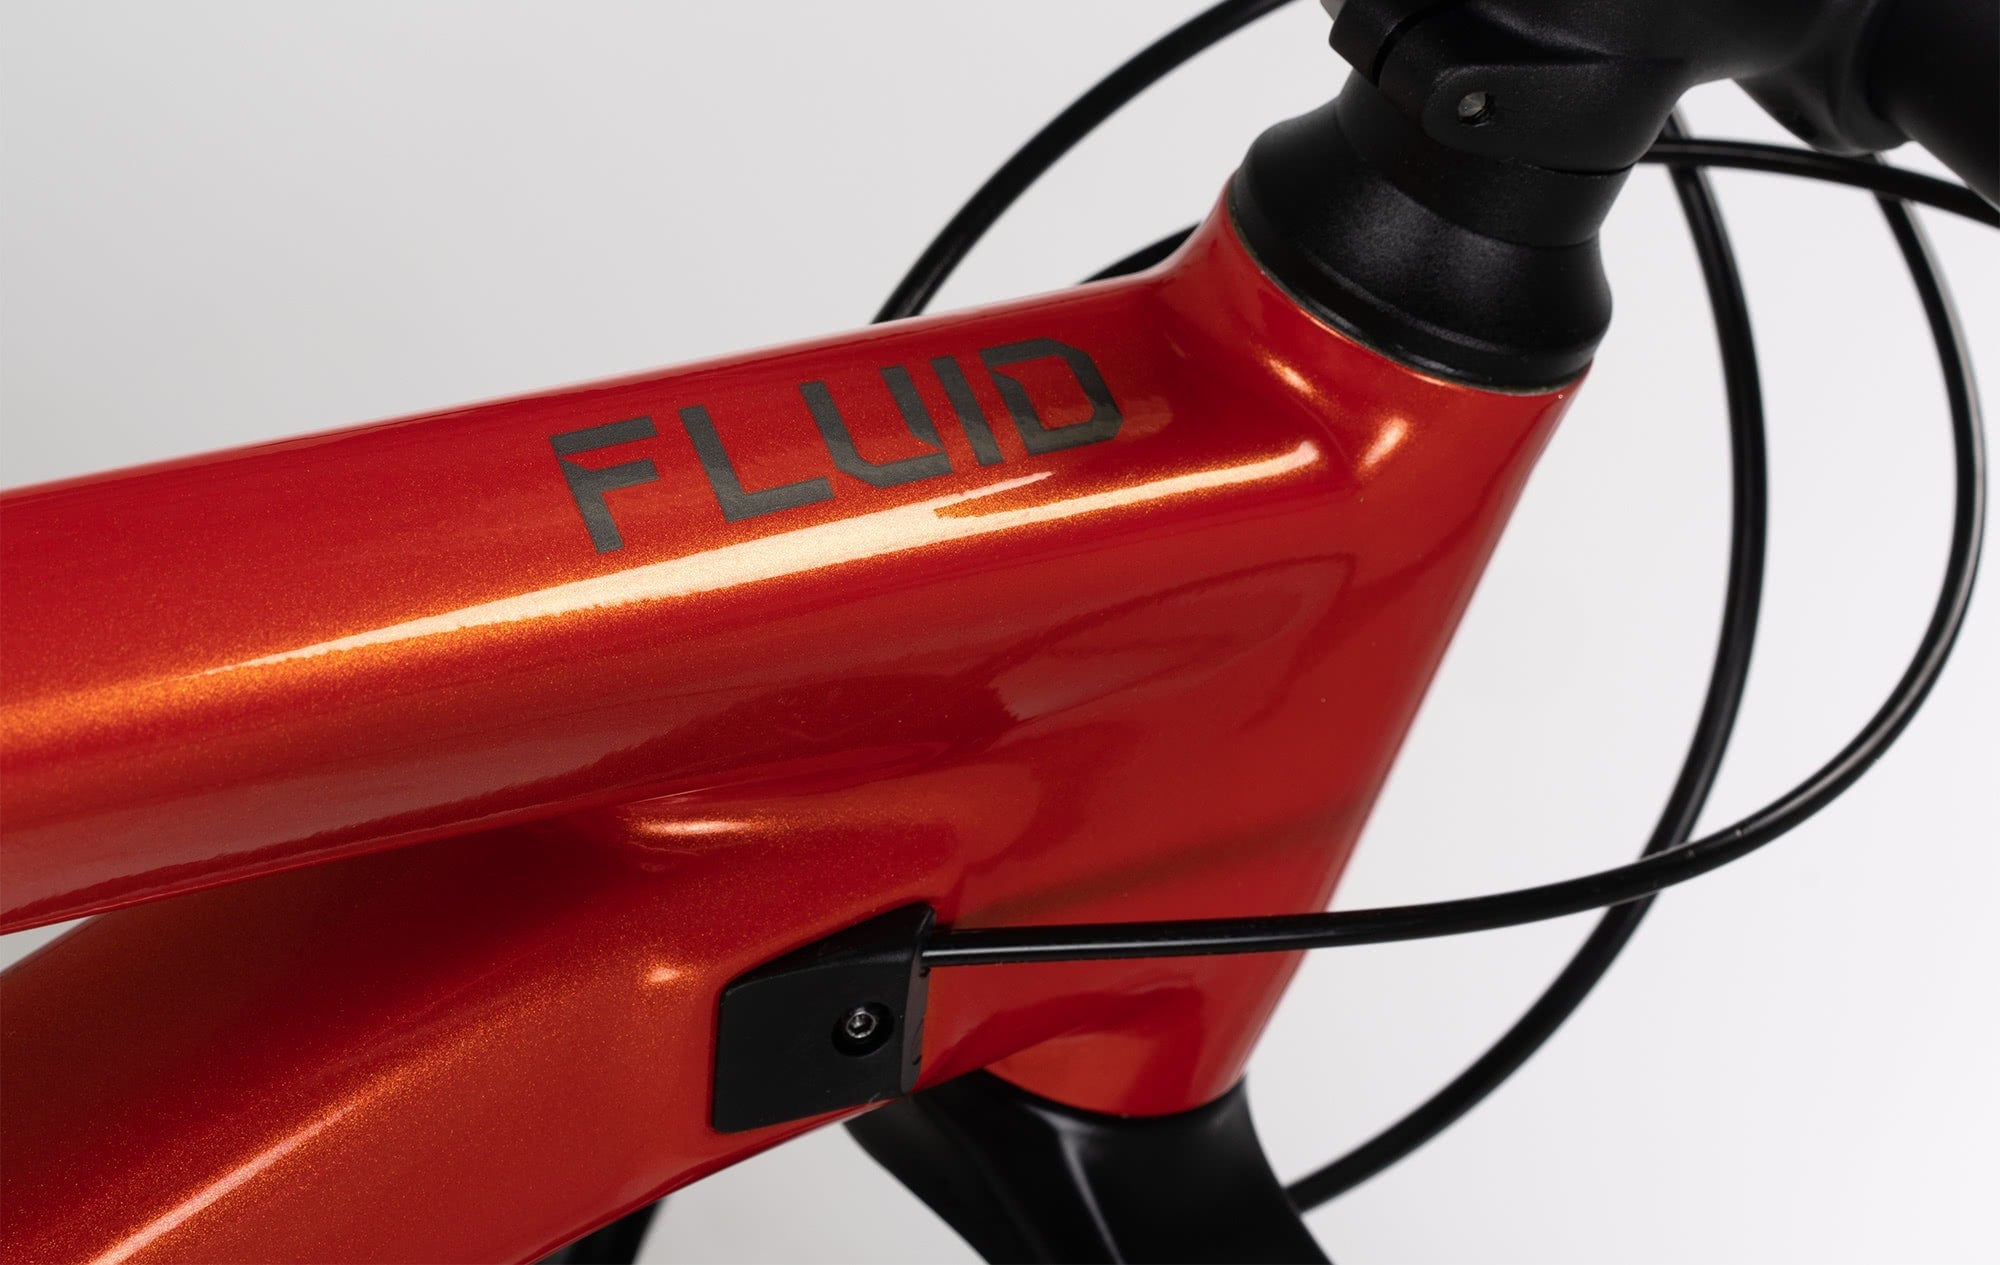 Vélo Norco Fluid FS 2 27.5’’ 2022 Orange/Charcoal - Genetik Sport